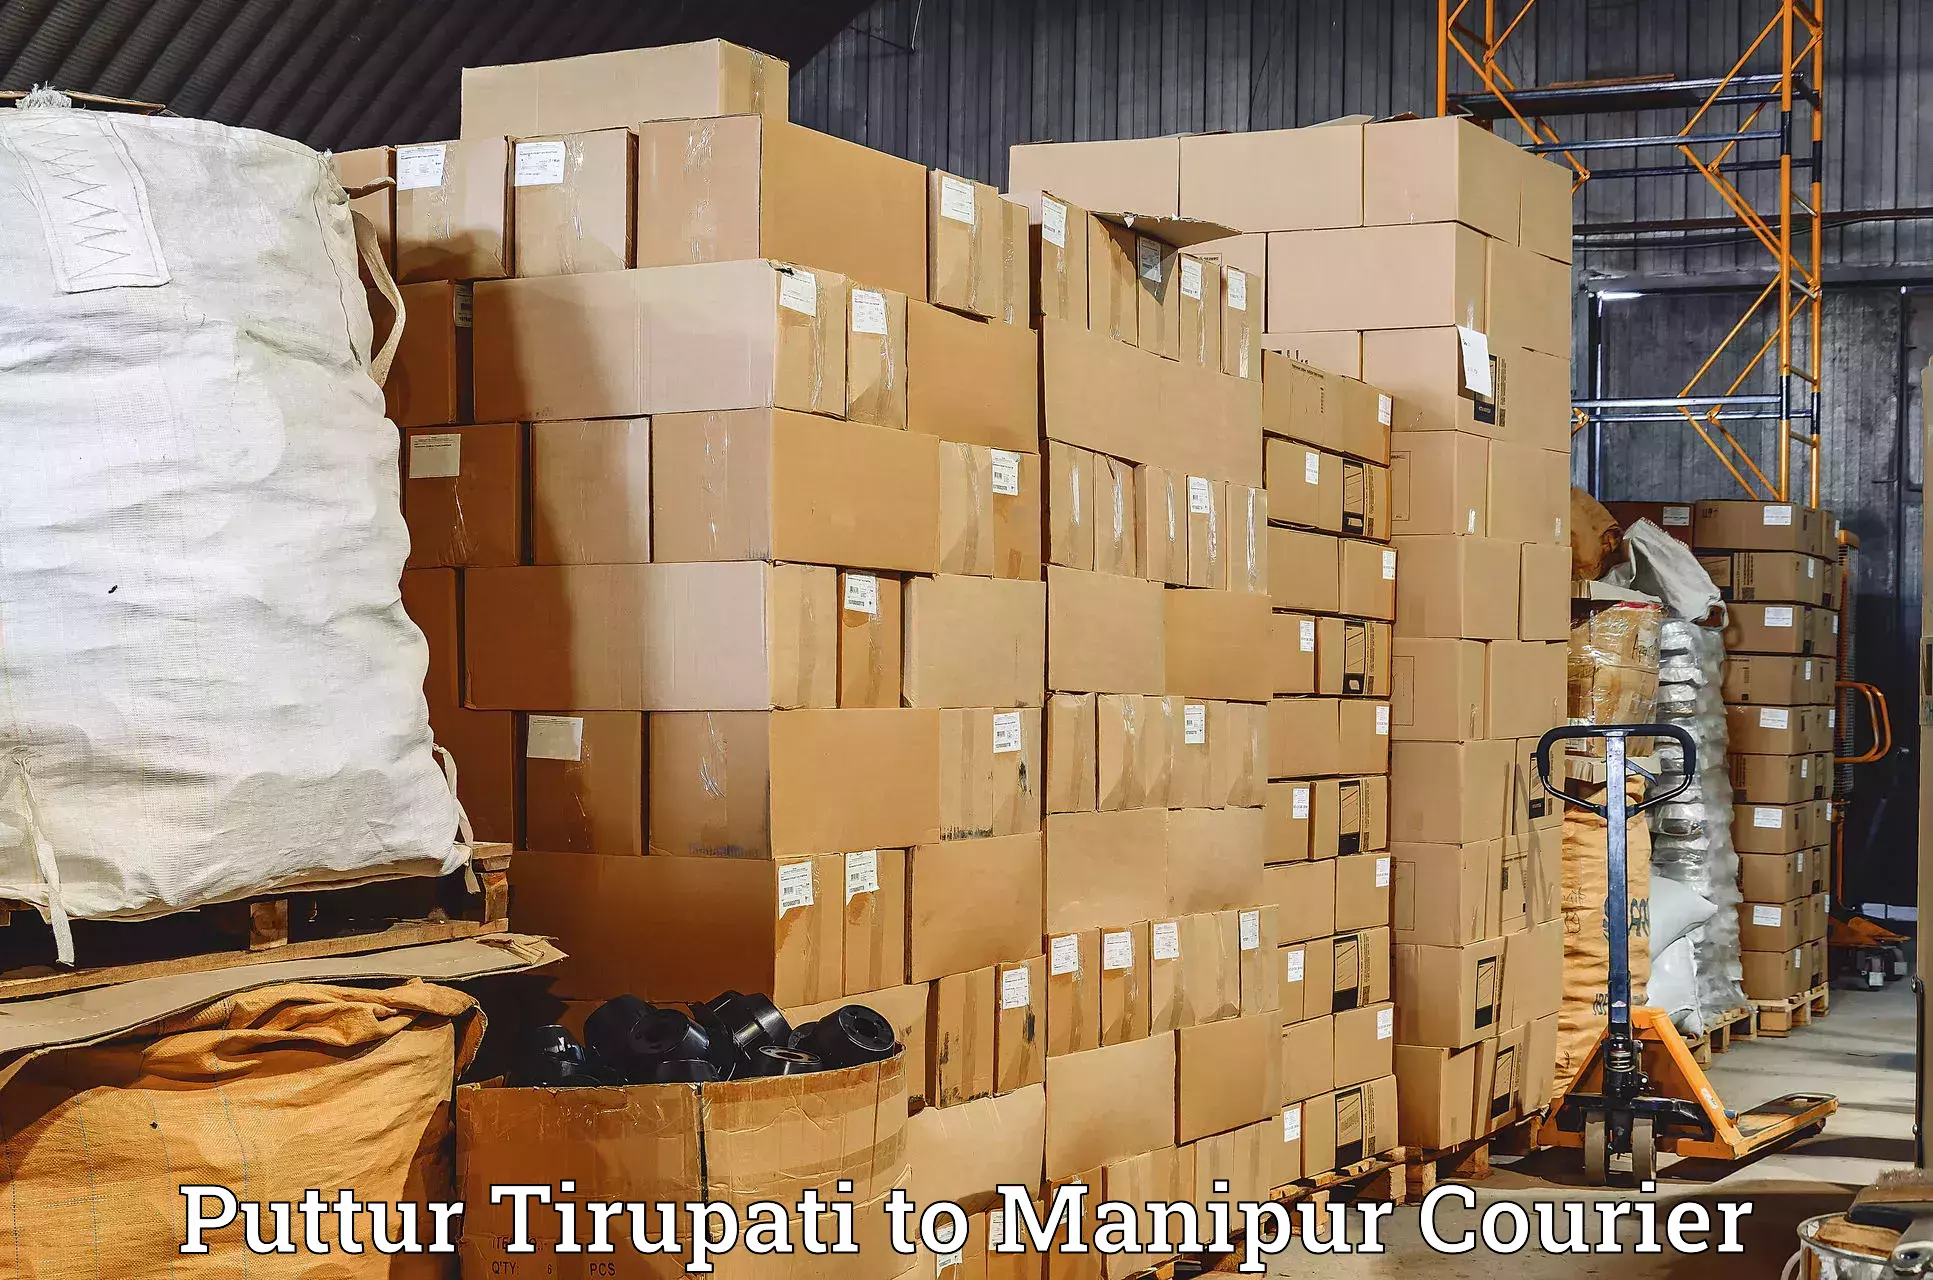 Cash on delivery service in Puttur Tirupati to Churachandpur